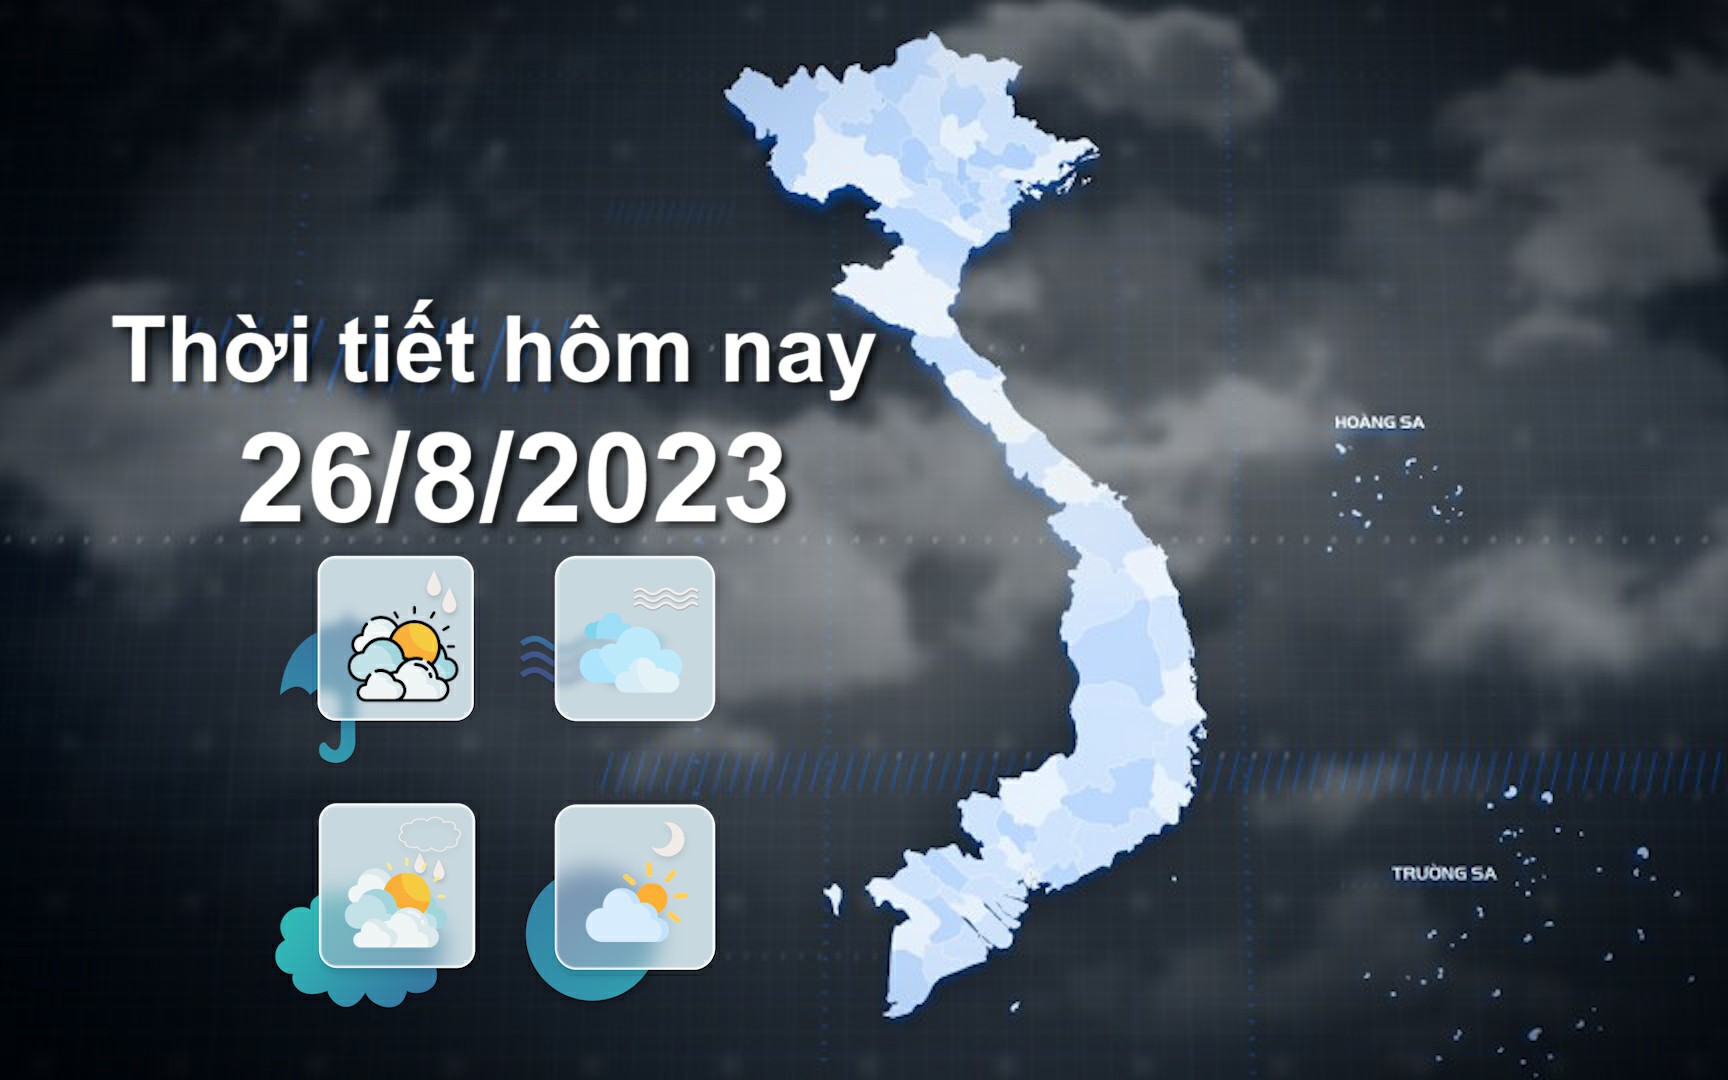 Thời tiết hôm nay 26/8/2023: Bắc Bộ ngày nóng, đêm có mưa dông; Trung Bộ nắng nóng gay gắt